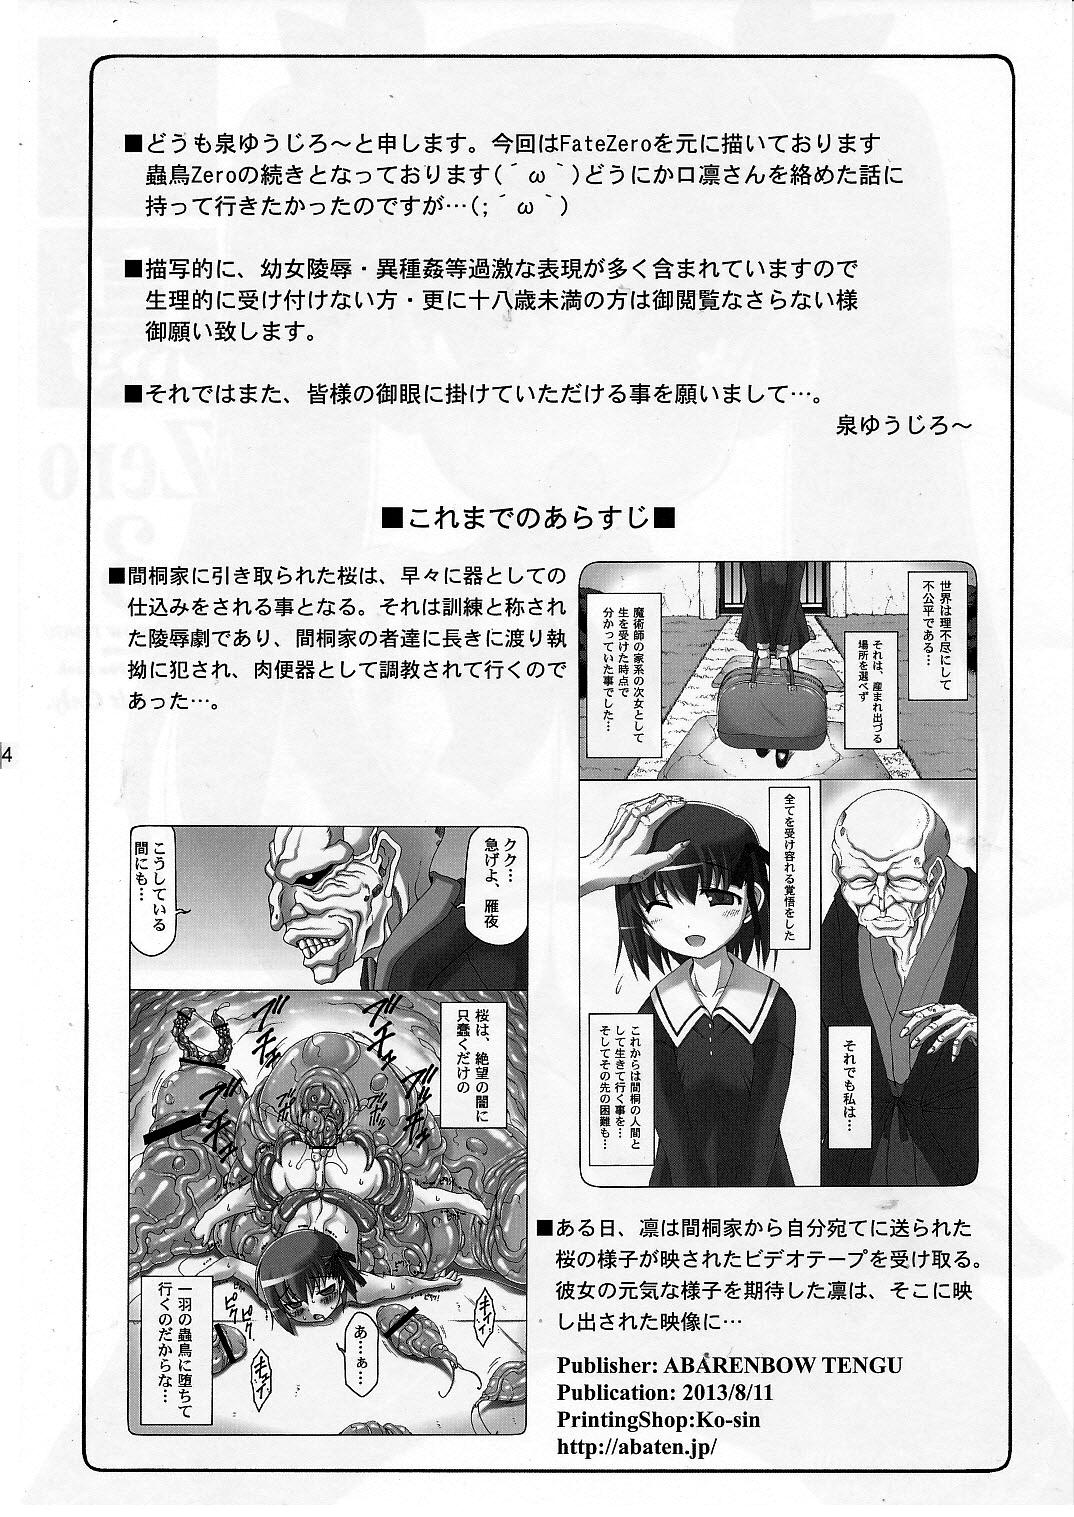 Gostoso Kotori Zero 3 - Fate zero Nalgona - Page 3